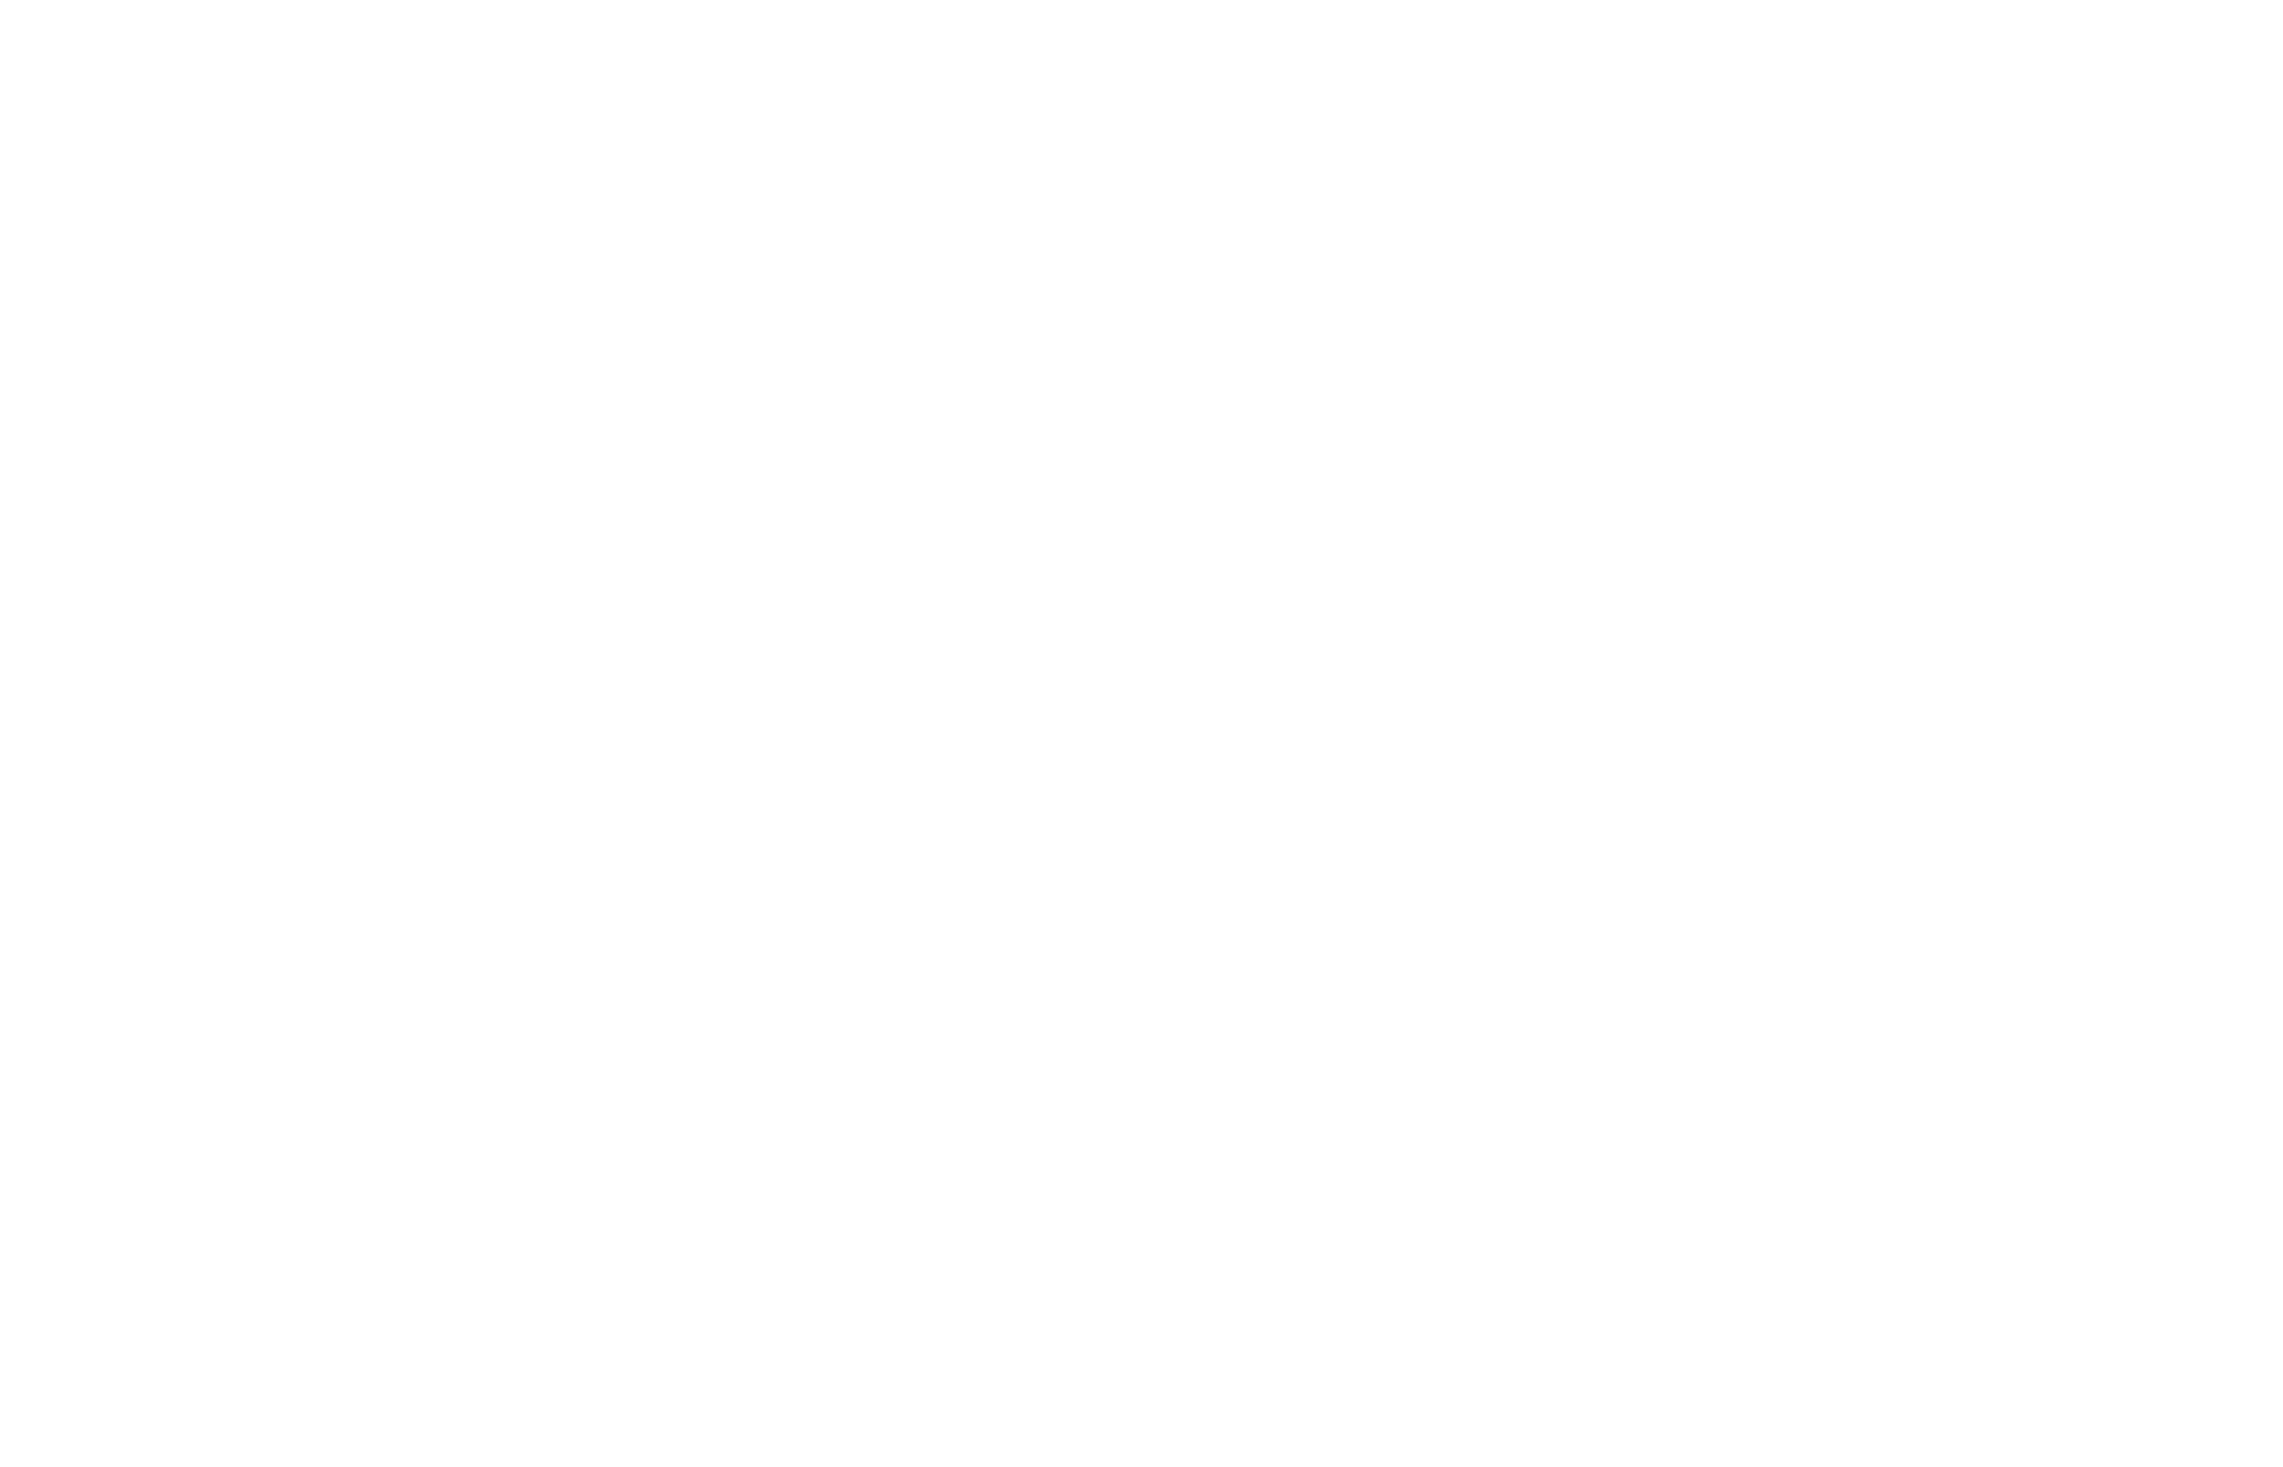 Artifact 001 - Weekday